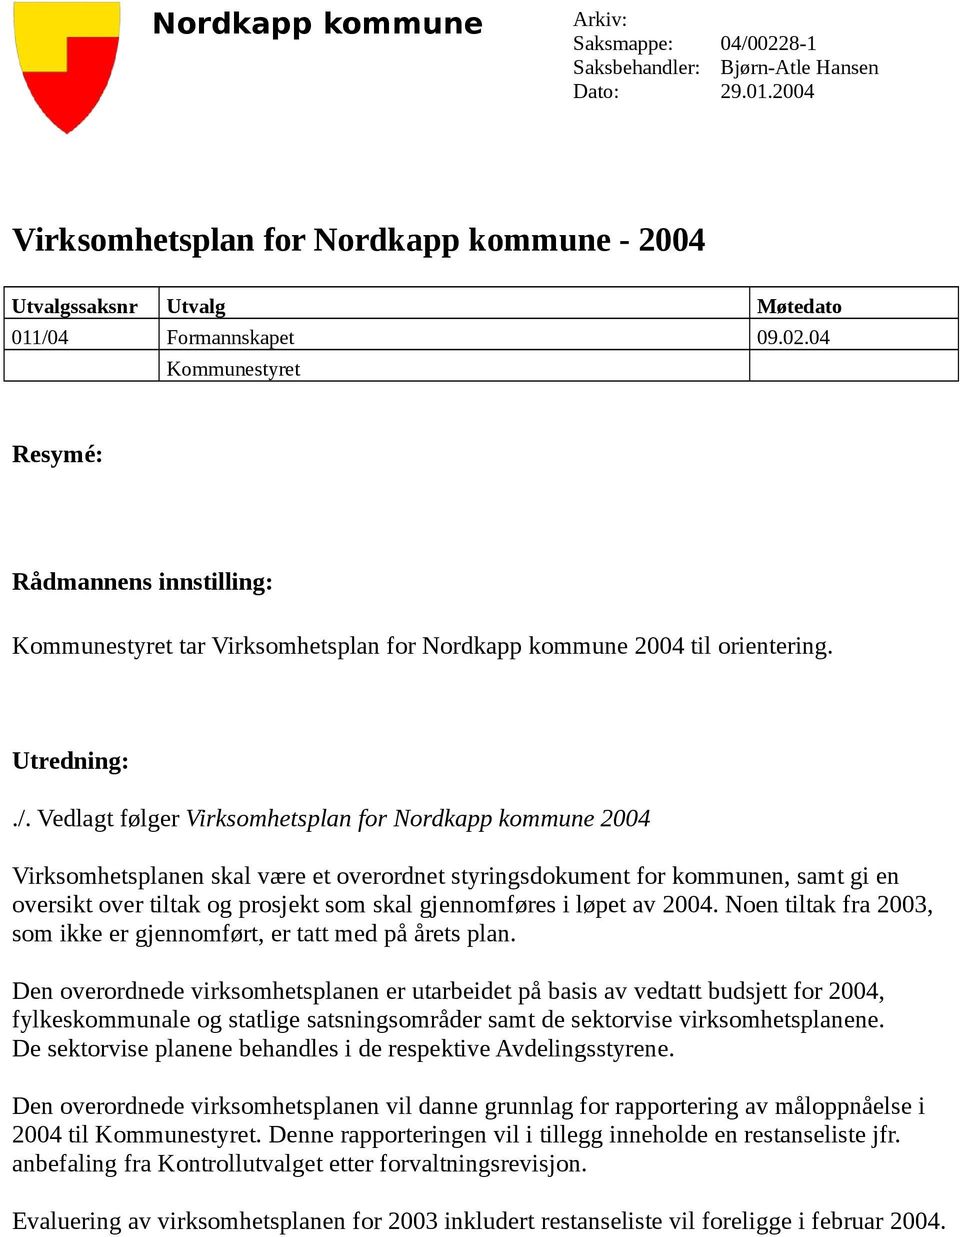 Vedlagt følger Virksomhetsplan for Nordkapp kommune 2004 Virksomhetsplanen skal være et overordnet styringsdokument for kommunen, samt gi en oversikt over tiltak og prosjekt som skal gjennomføres i